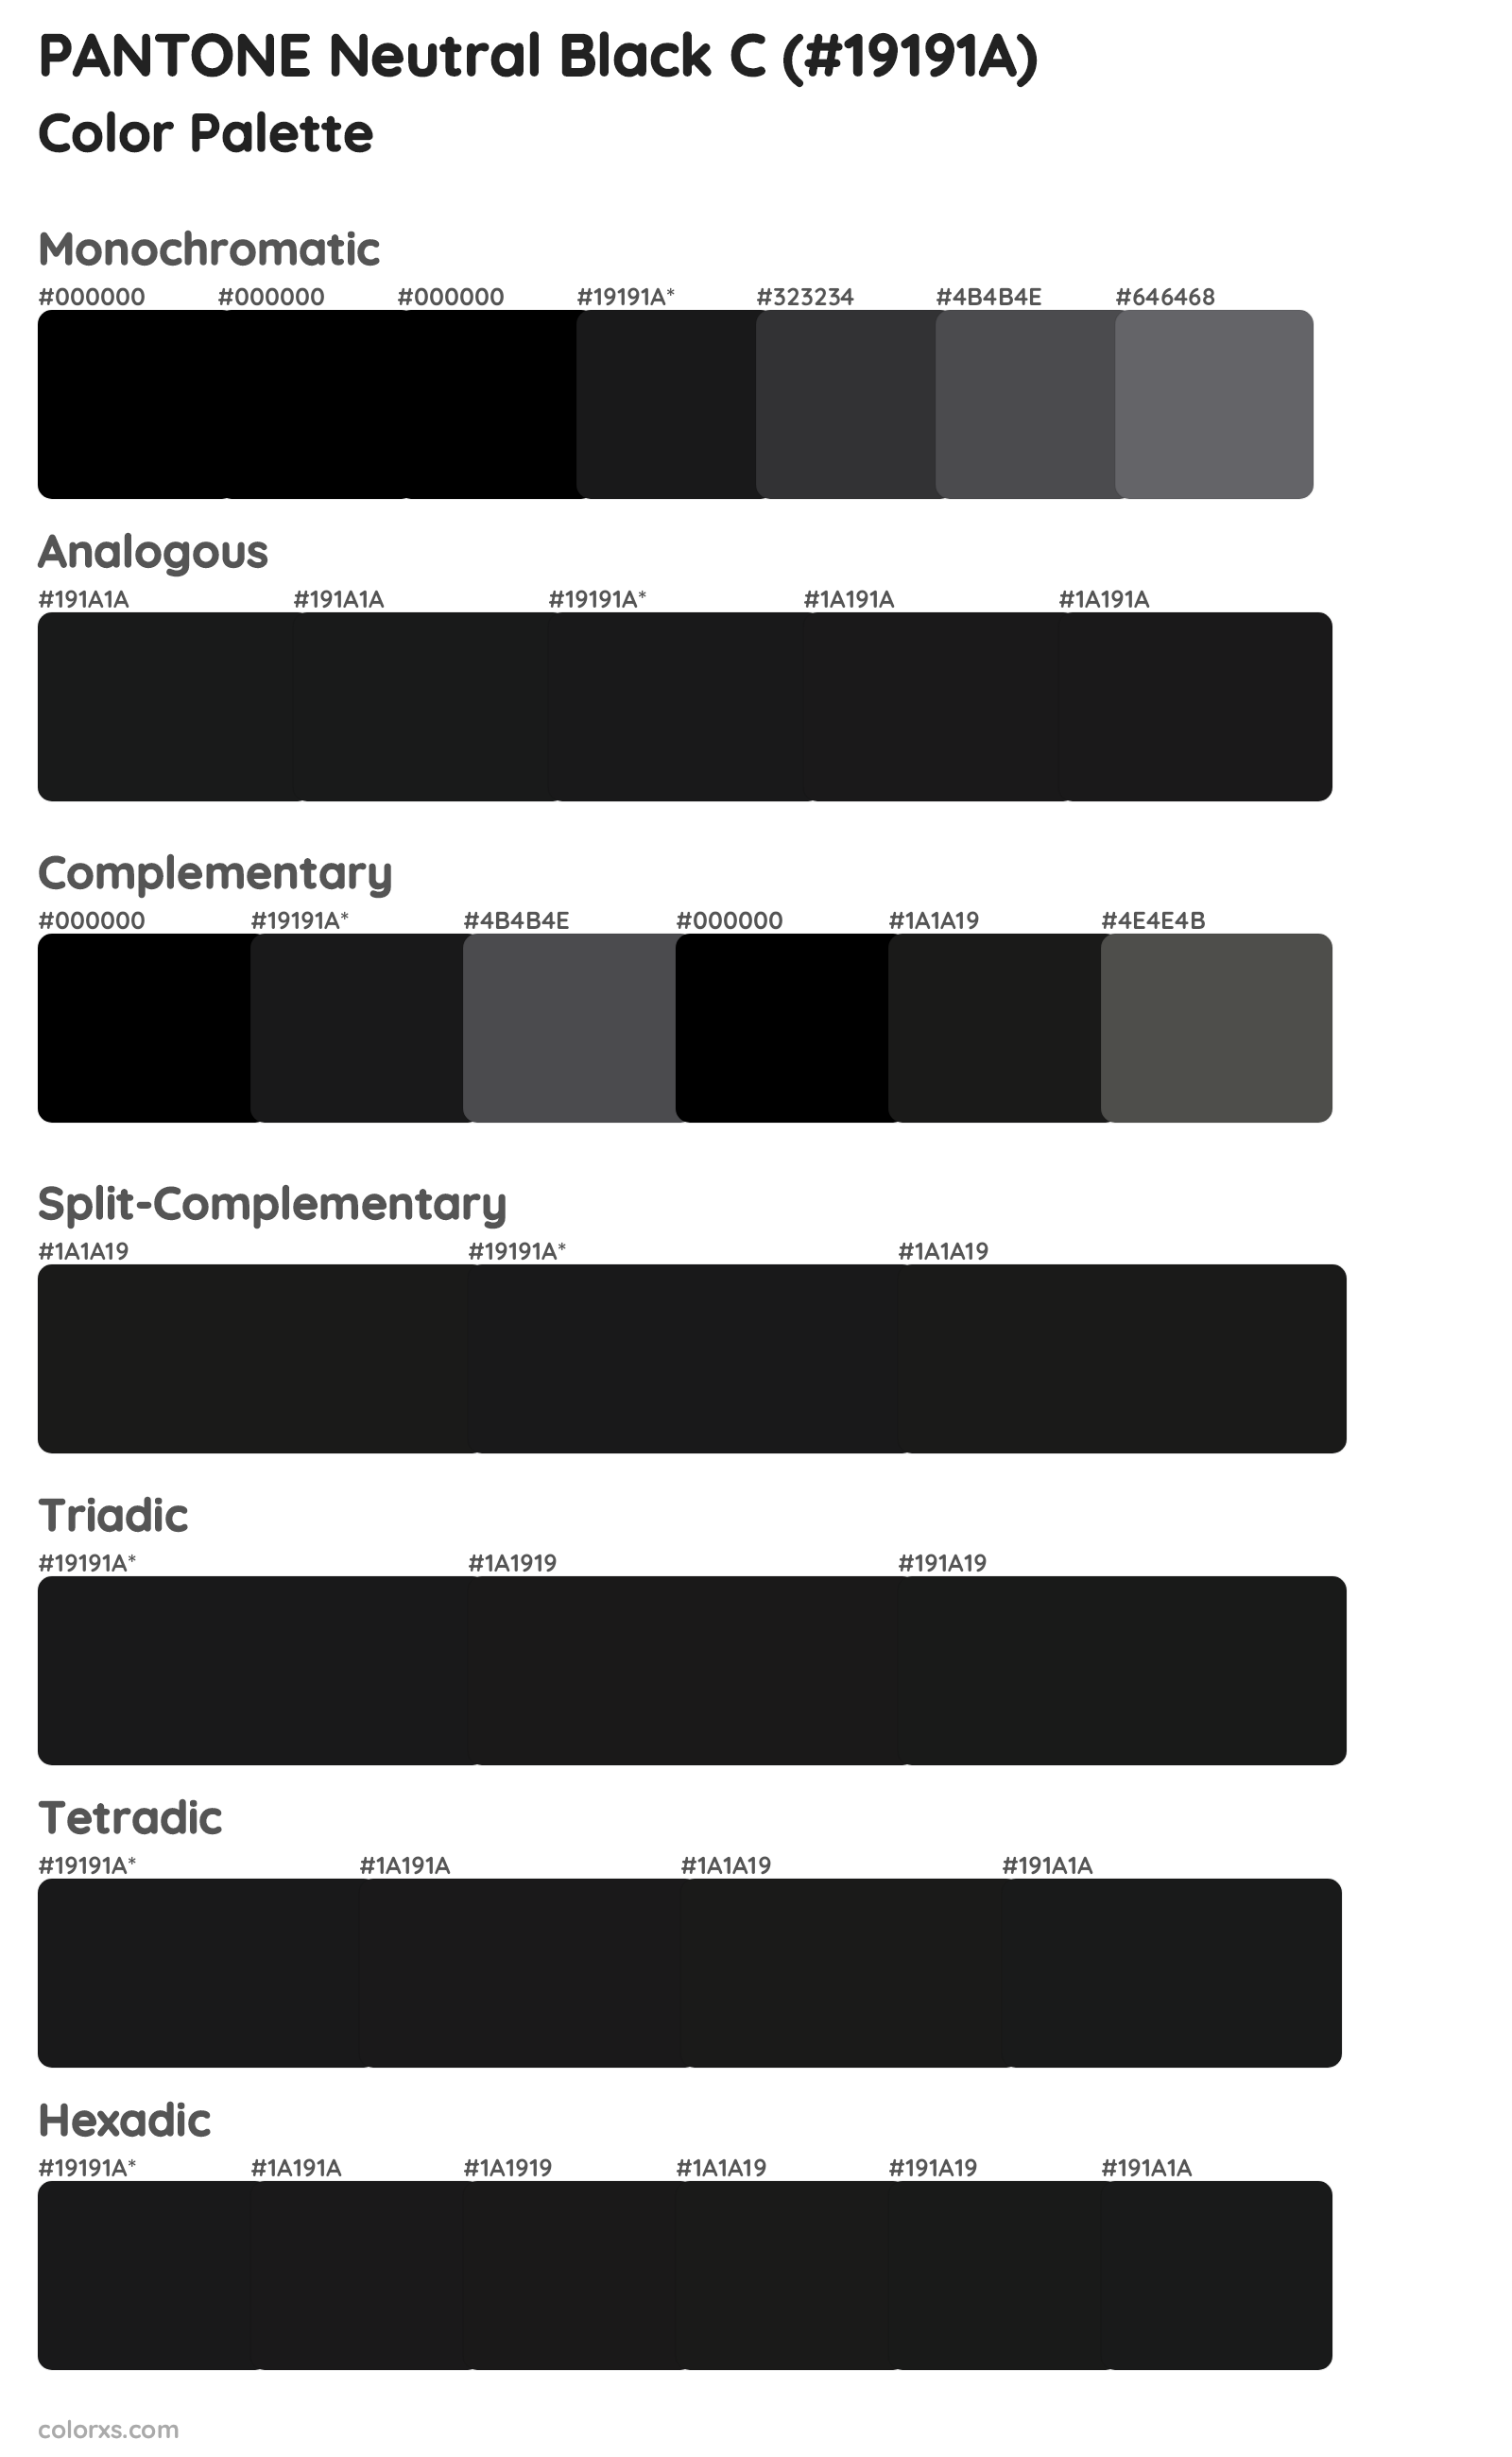 PANTONE Neutral Black C Color Scheme Palettes